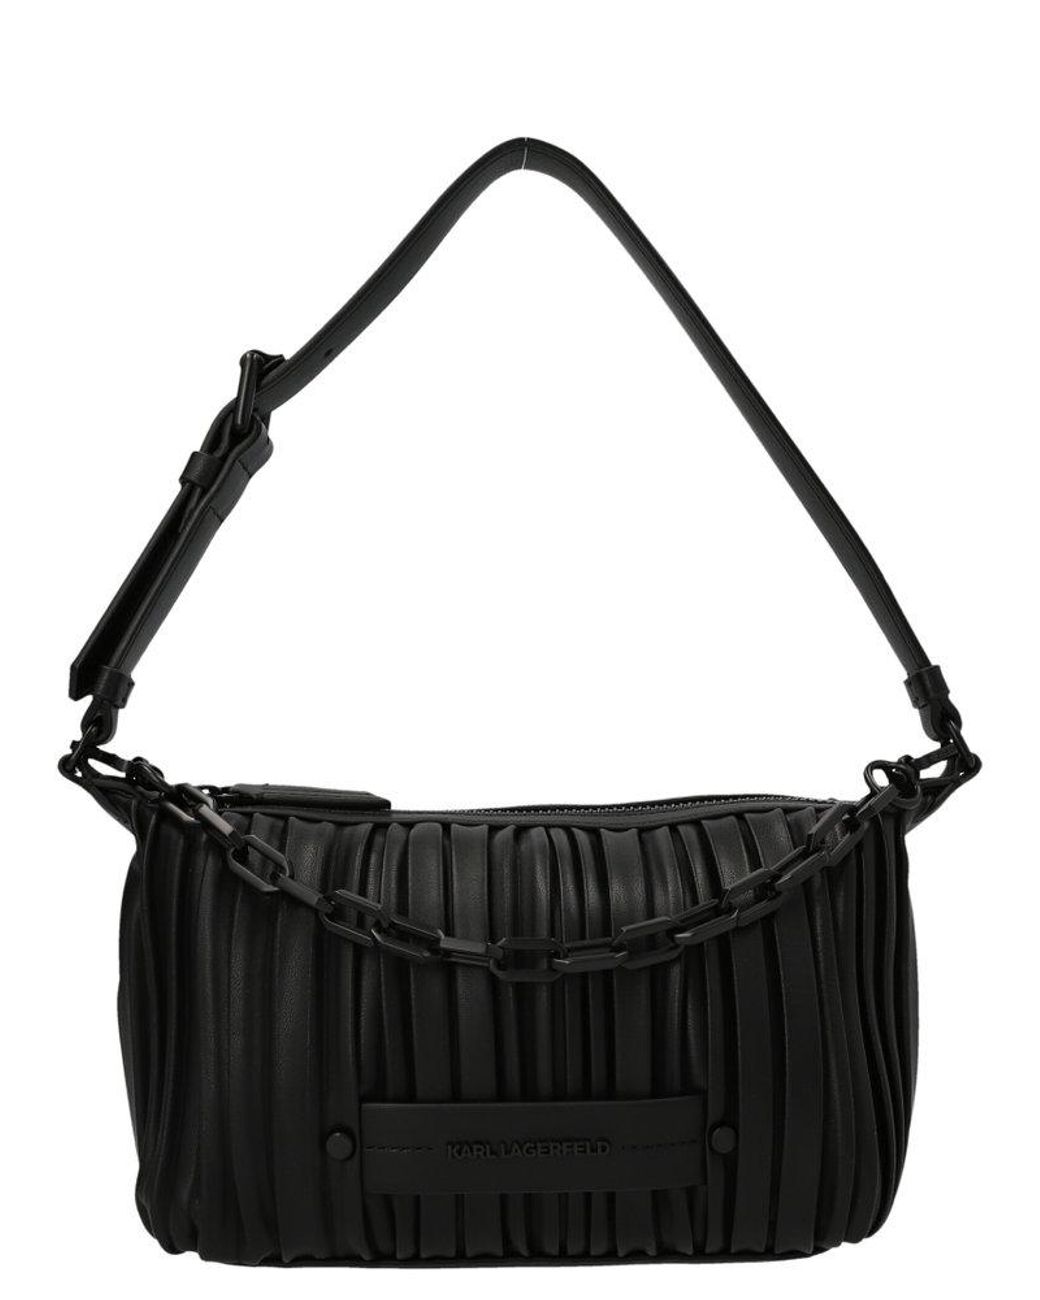 Karl Lagerfeld K/kushion Shoulder Bag in Black | Lyst